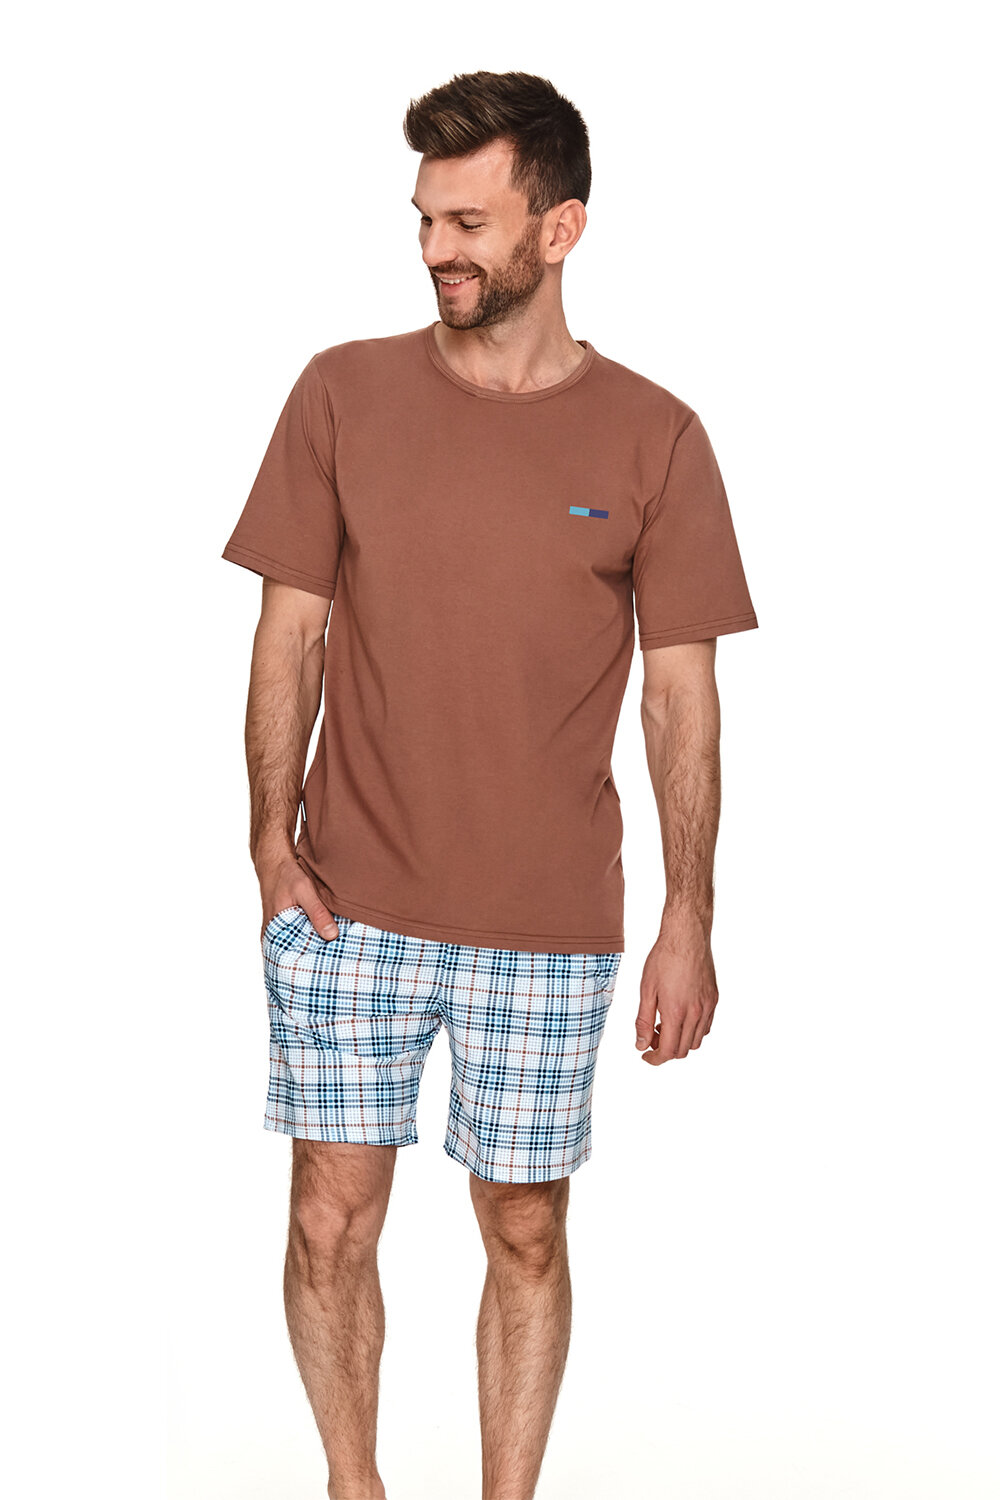 Пижама мужская TARO Igor 2732-02, футболка и шорты, коричневый, хлопок 100% (Размер: XXL)